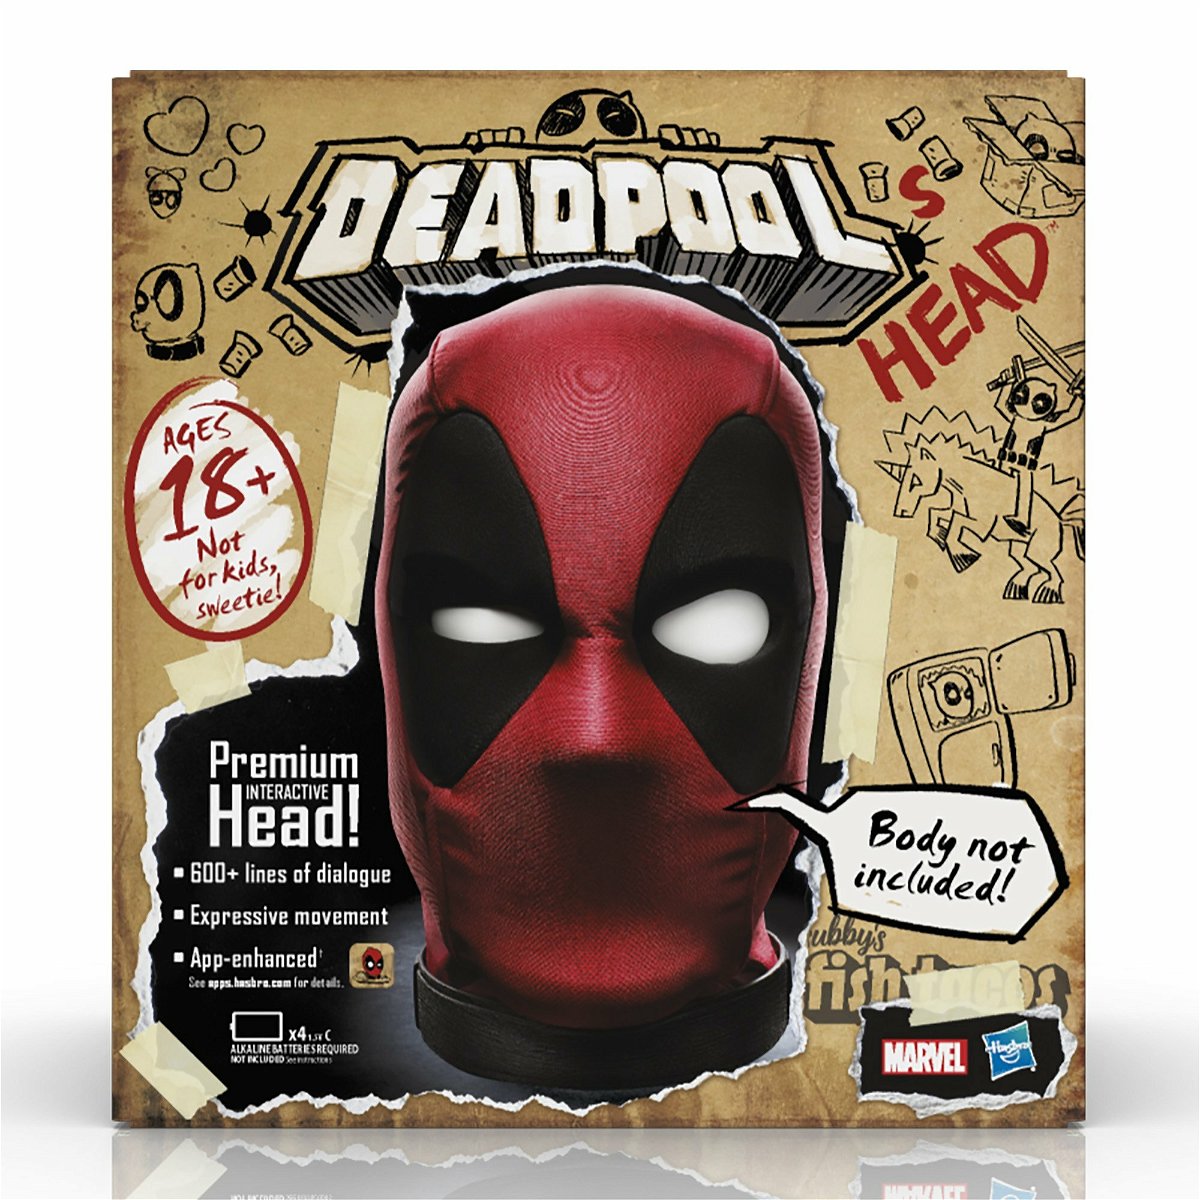 Il box che contiene la testa di Deadpool